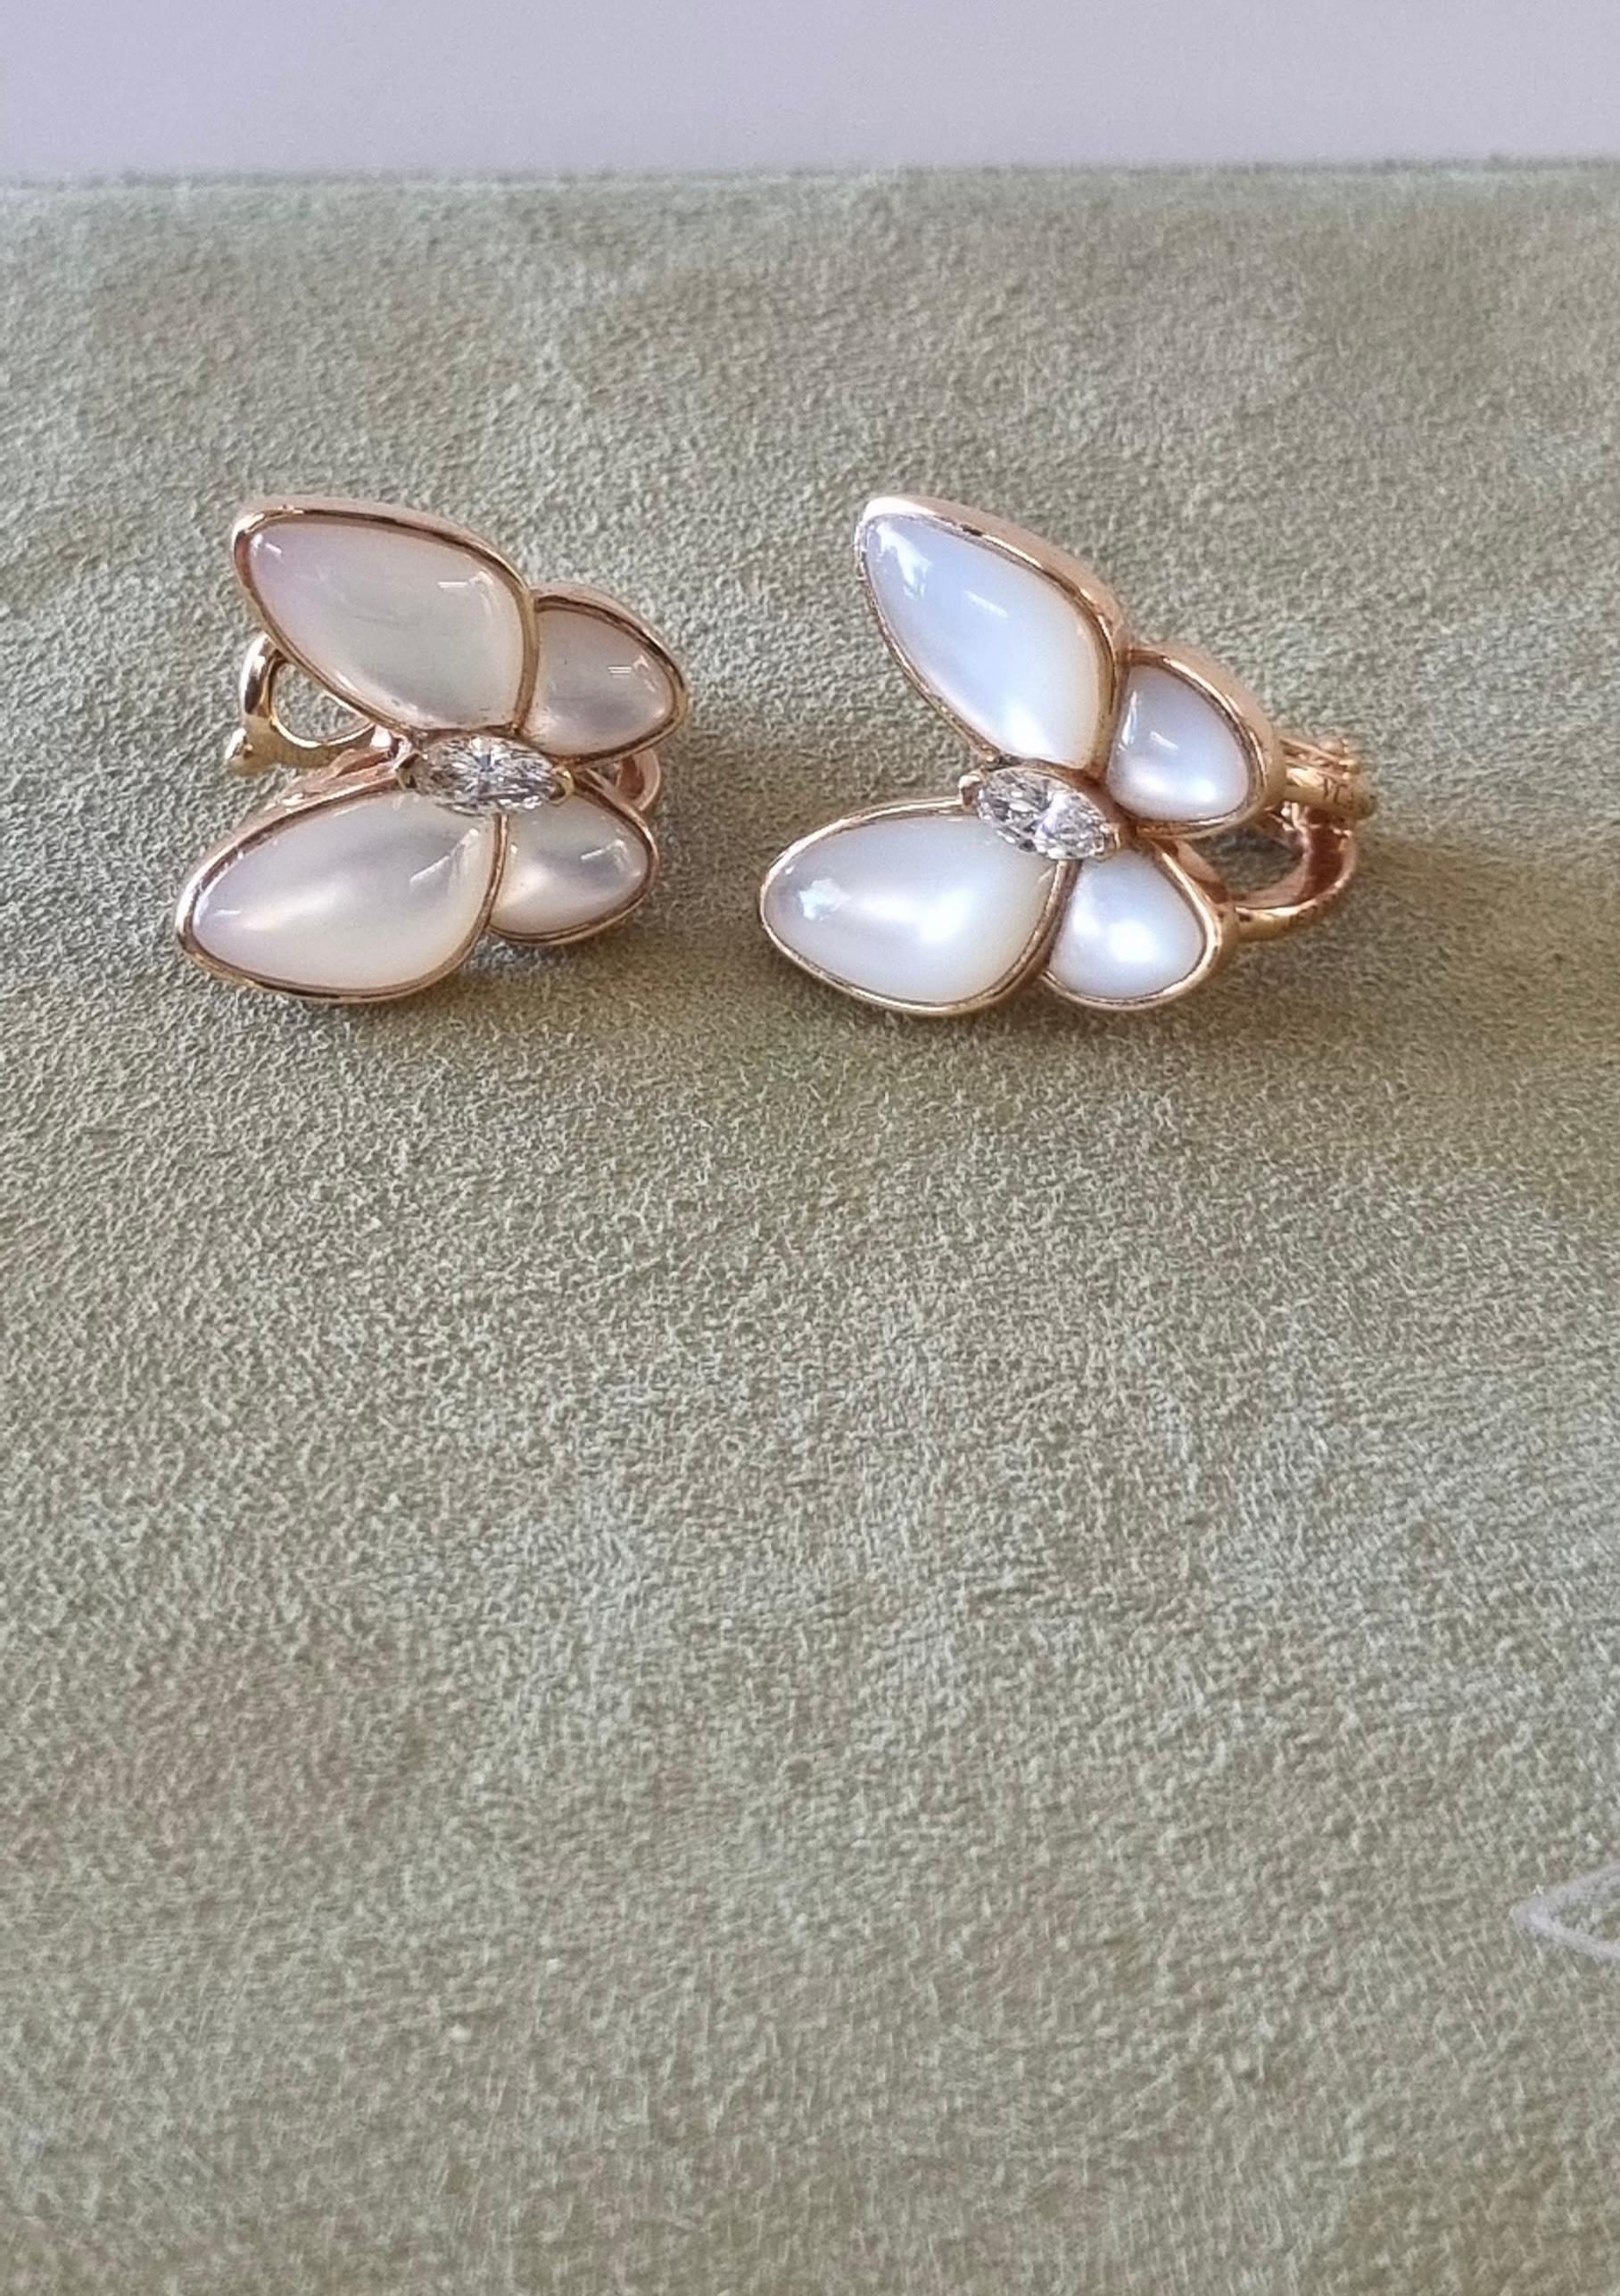 van cleef two butterfly earrings